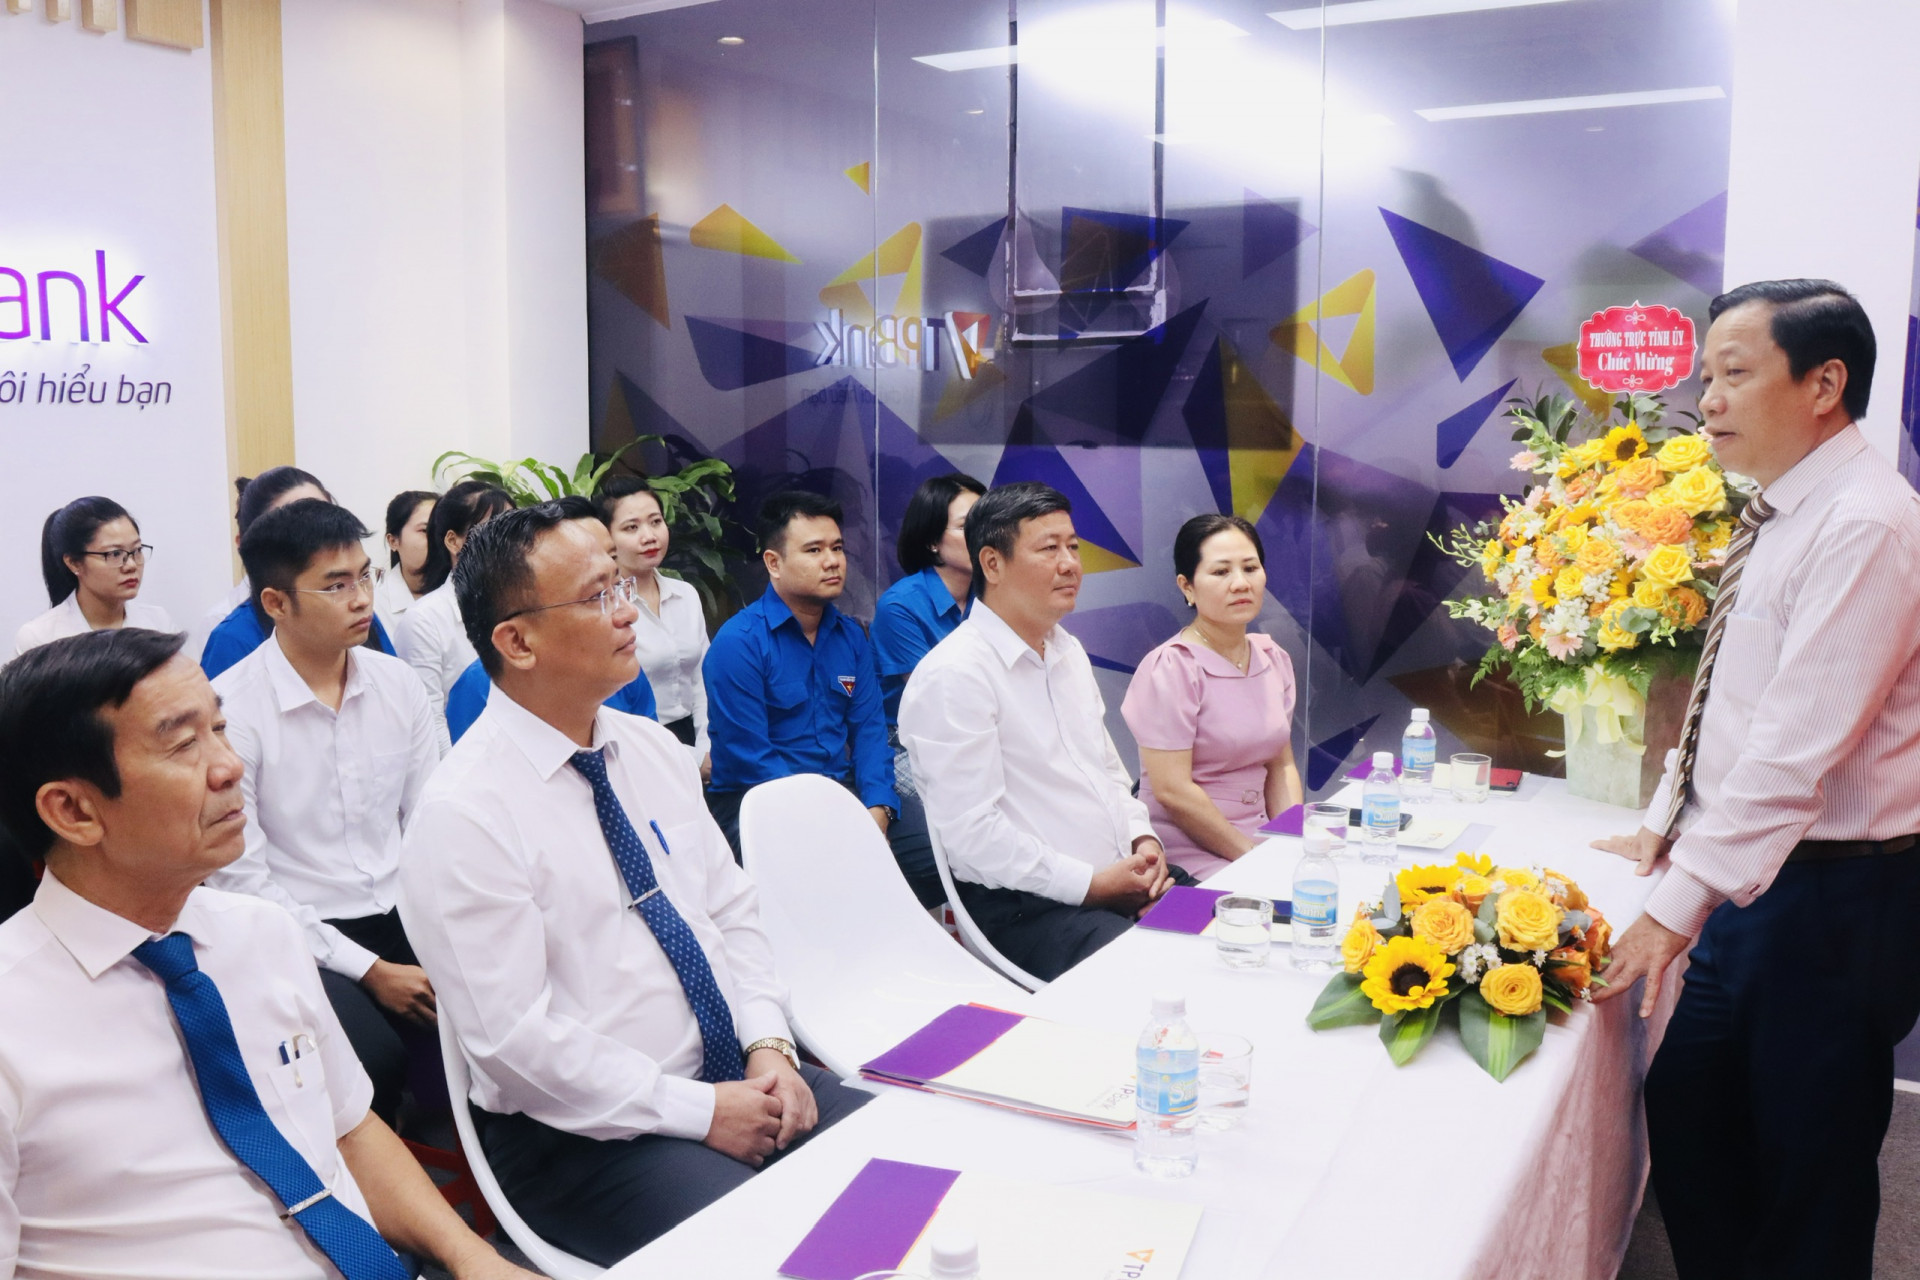 Phó Bí thư Tỉnh ủy Hà Quốc Trị phát biểu giao nhiệm vụ cho Chi bộ Ngân hàng Thương mại cổ phần Tiên Phong chi nhánh Nha Trang